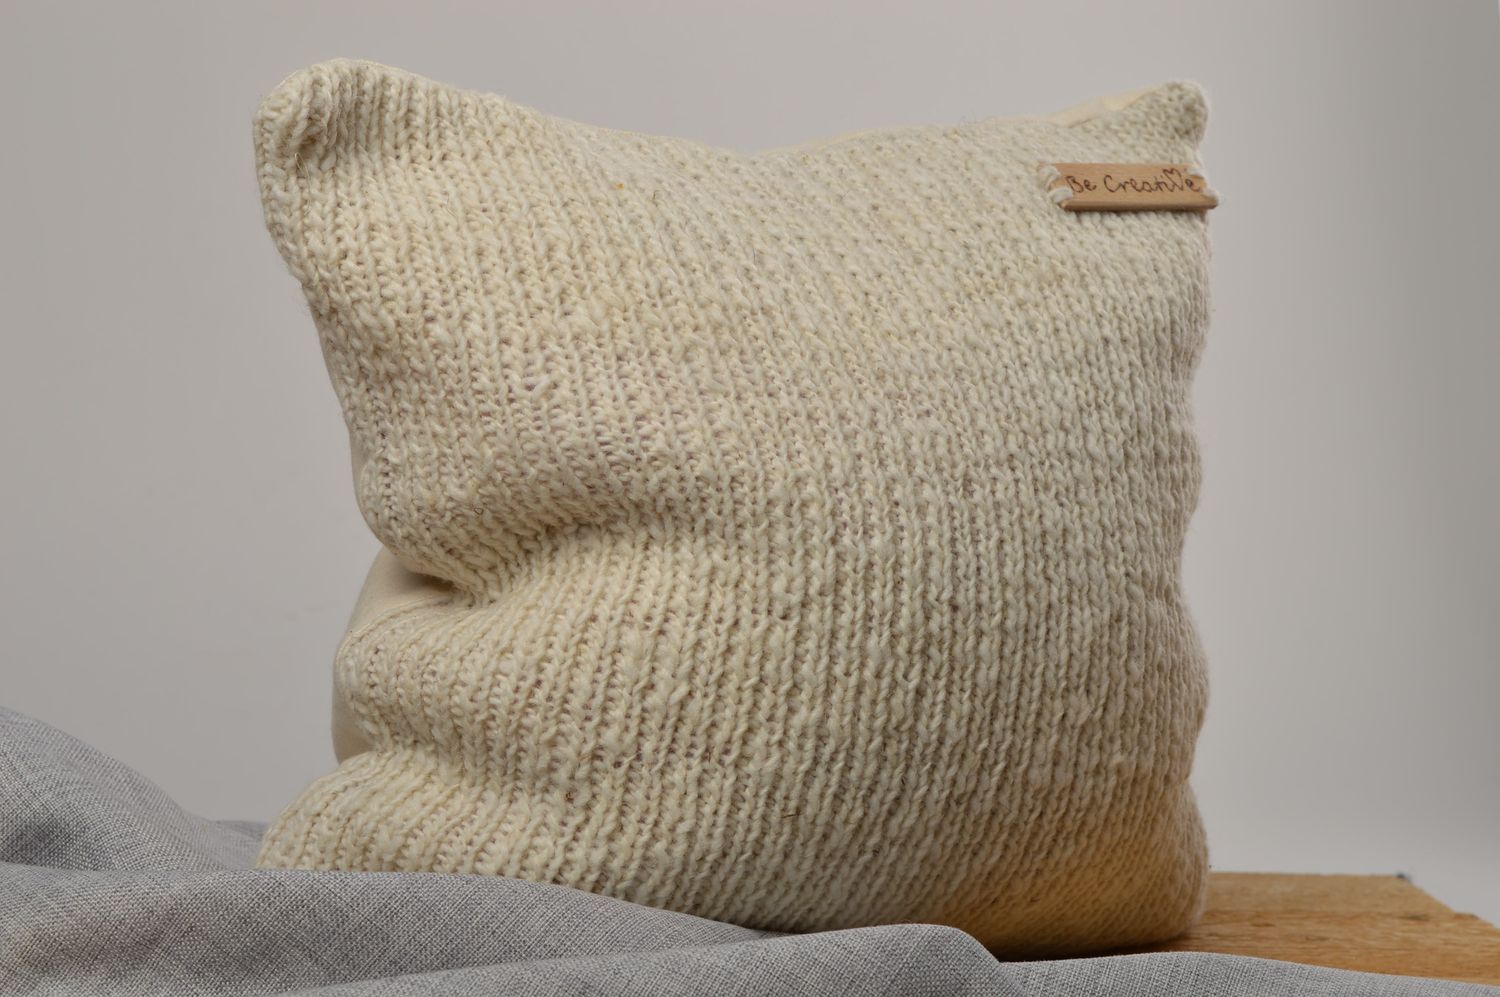 Funda de almohada artesanal tejida con dos agujas ropa de cama regalo para mujer foto 1